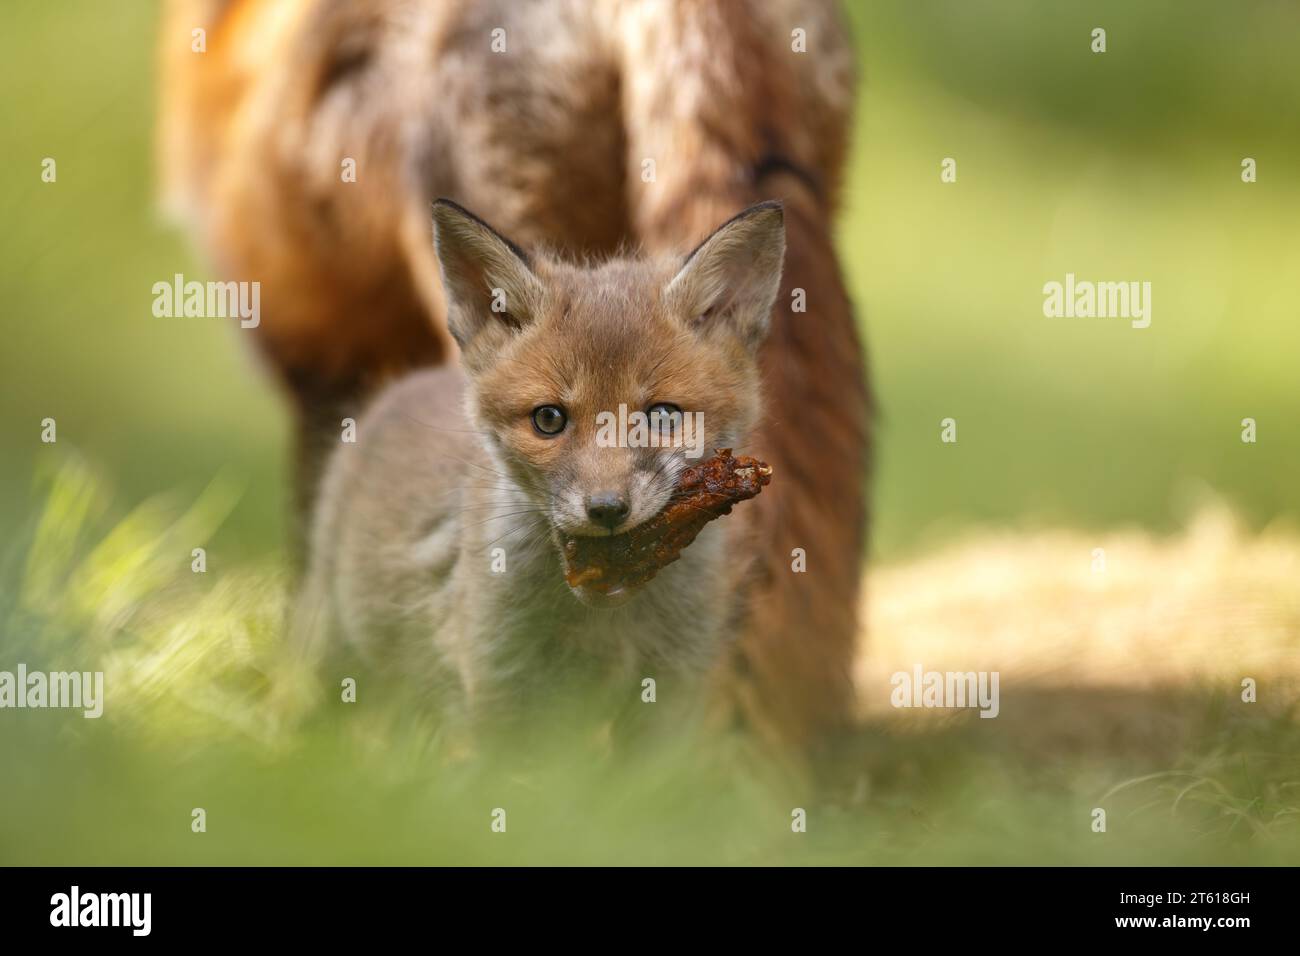 Jeune petit renard nourri d'un pilon de poulet par sa mère Banque D'Images